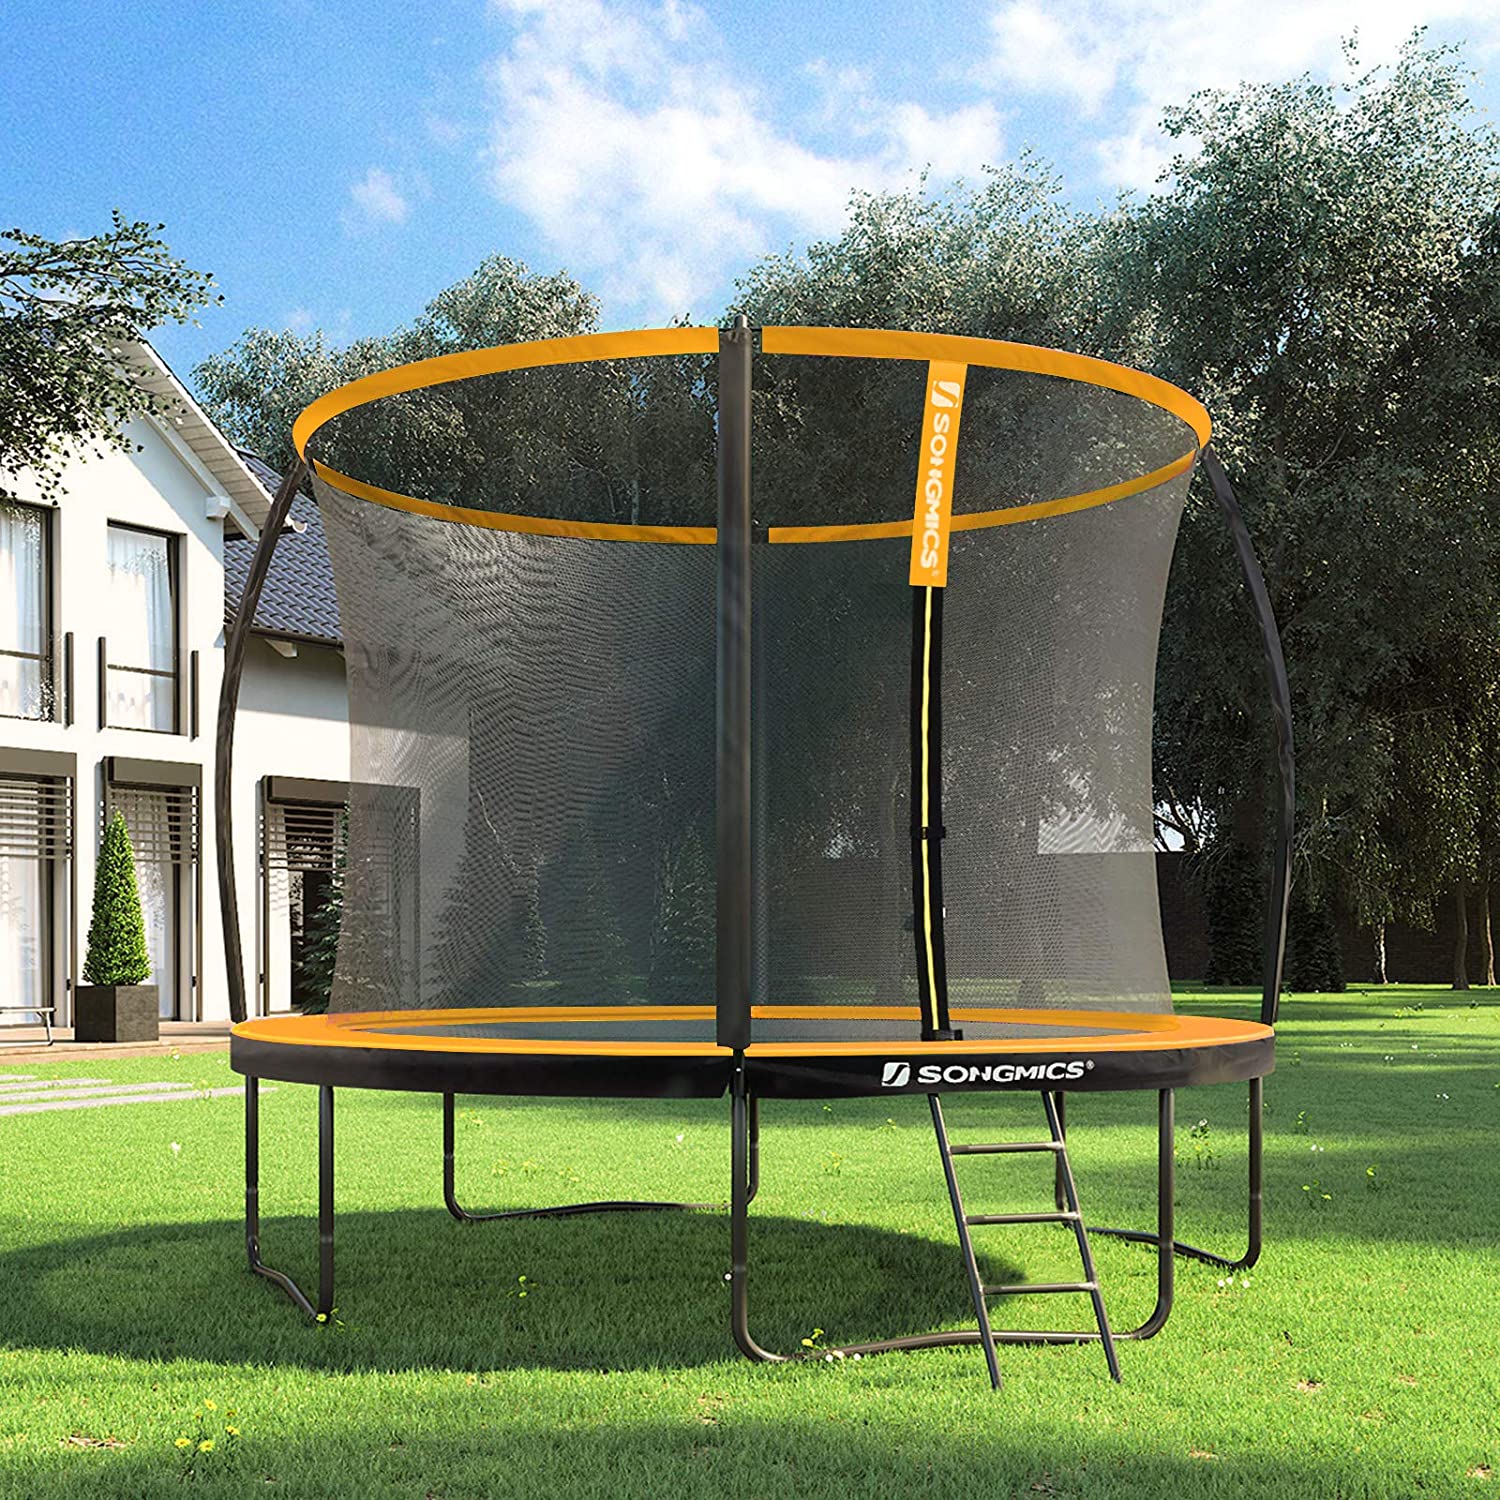 Nancy's Santee Trampoline - Garden trampoline - Round - Safety net - Ladder - Arch poles - Safety test - Black - Orange - 305/366 cm